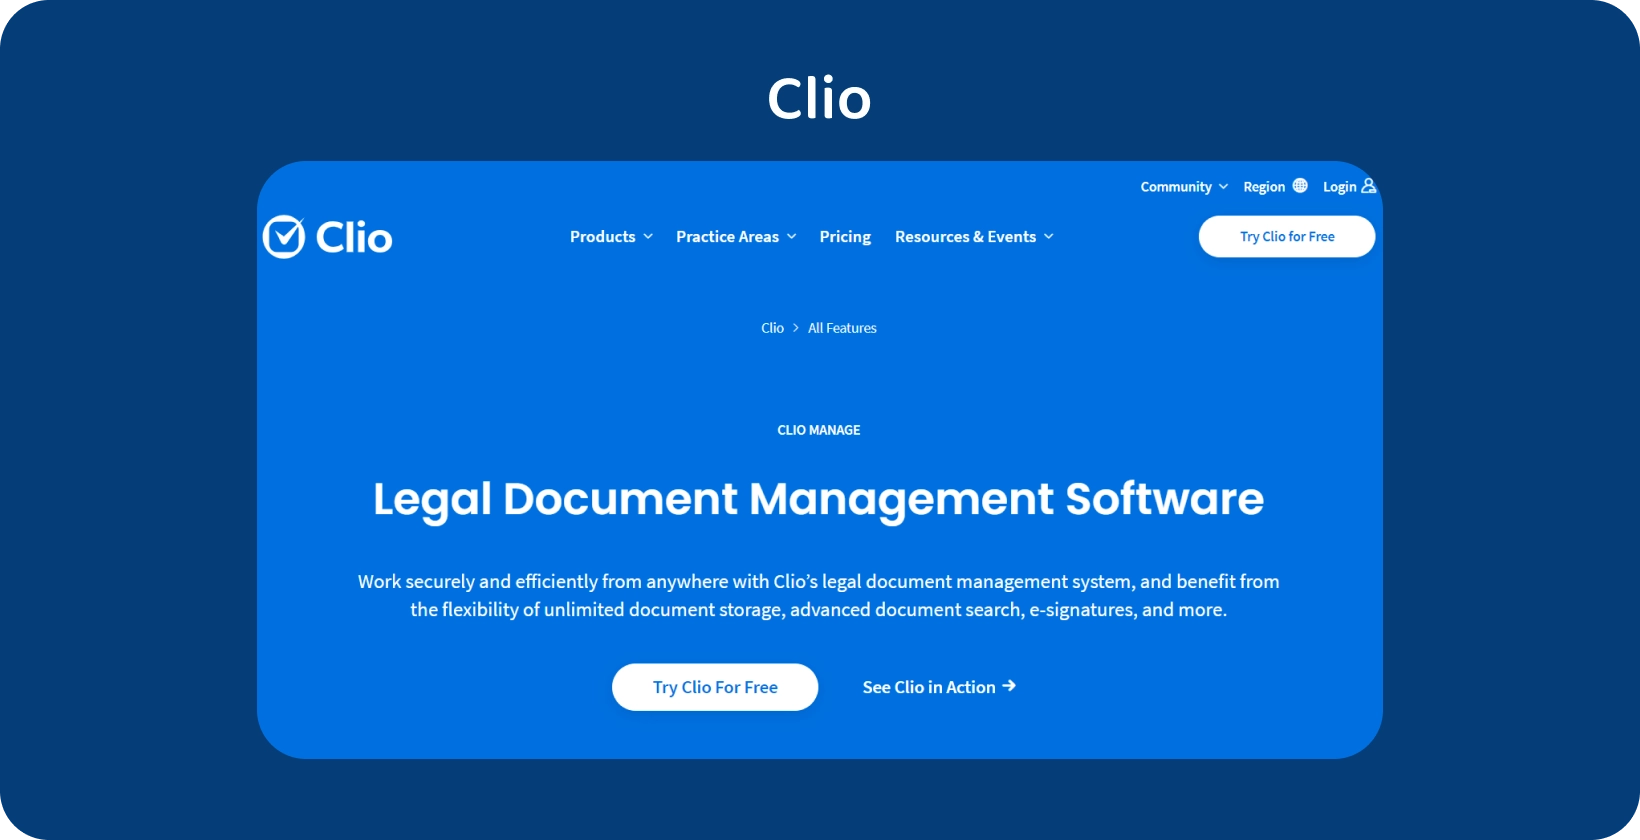 ממשק המשתמש של Clio מציג את תוכנת ניהול המסמכים המשפטיים שלה, הממטבת את הטיפול ברשומות מאורגנות.